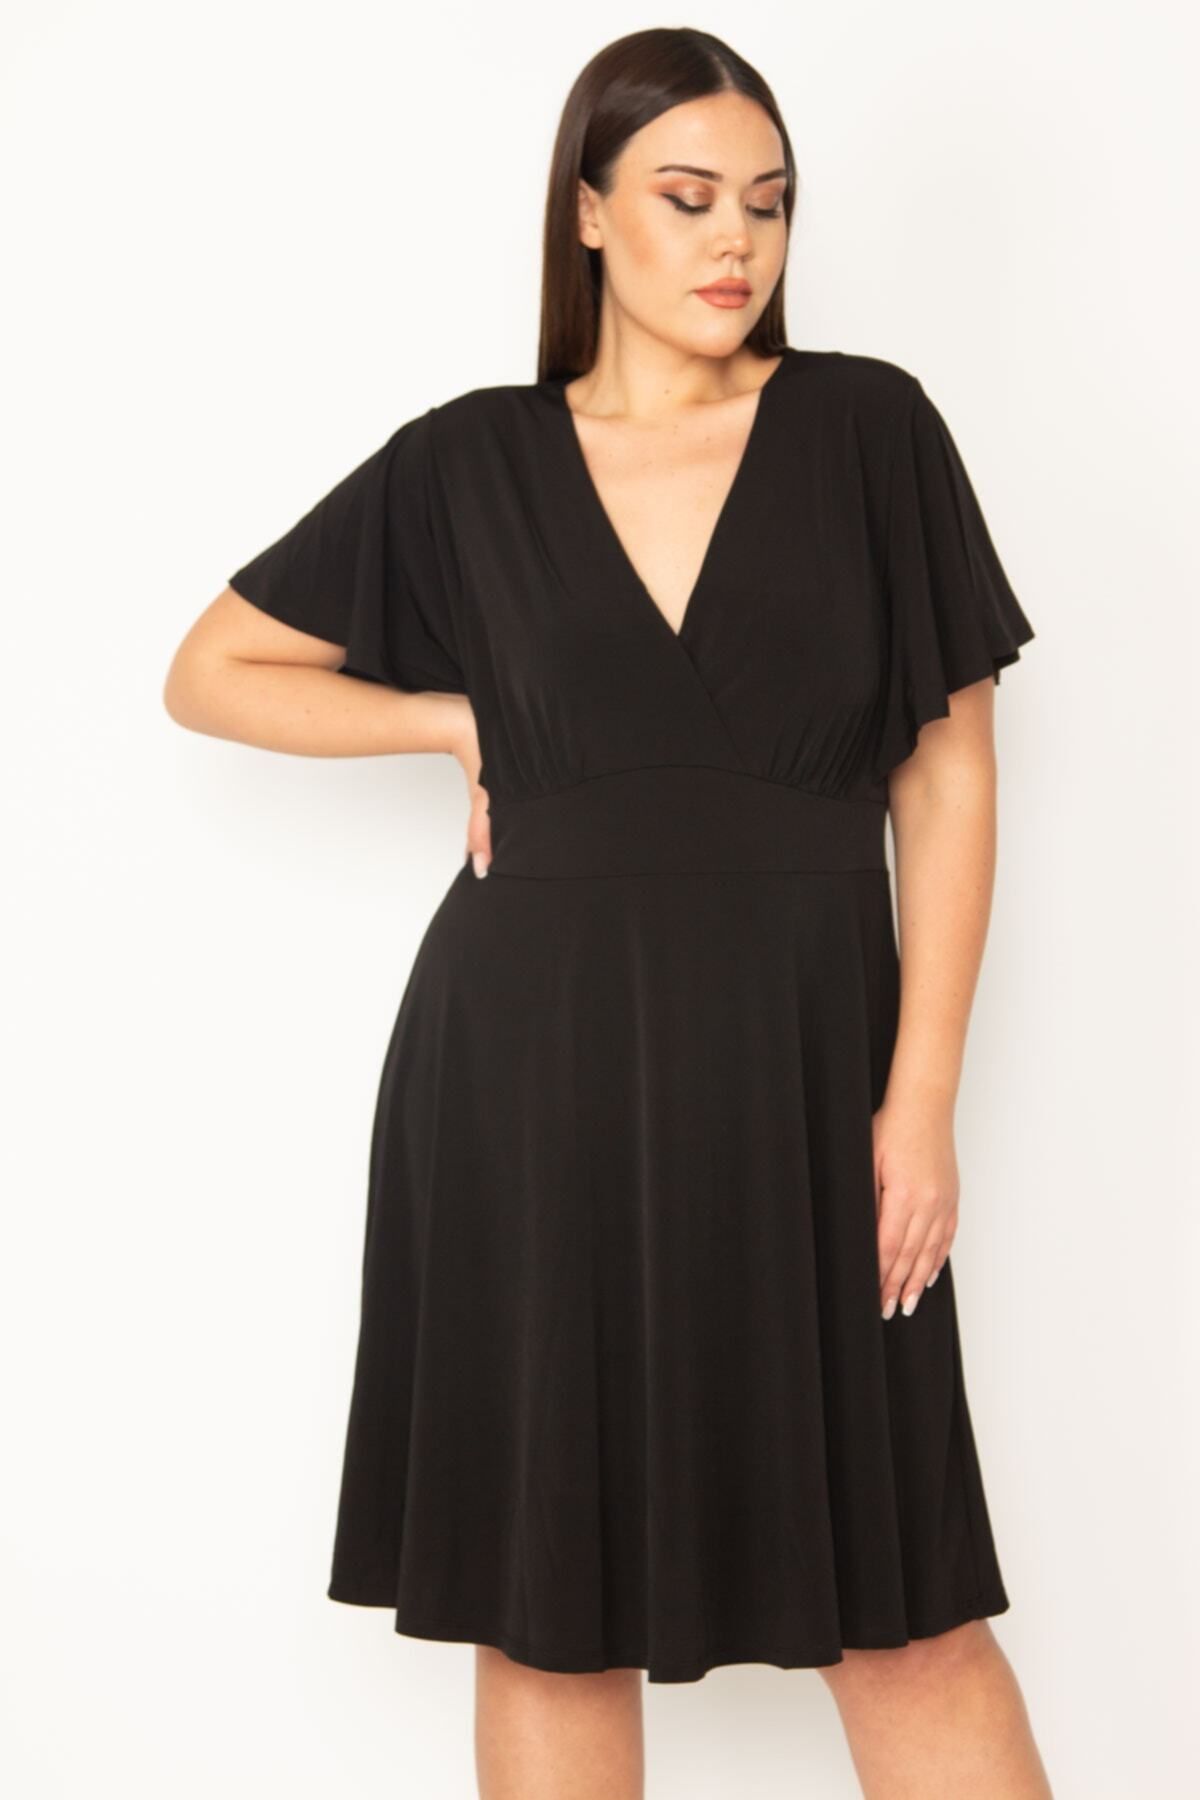 Şans Kadın Büyük Beden Siyah Anvelop Yaka Göğüs Büzgülü Volan Kol Elbise 65n31520